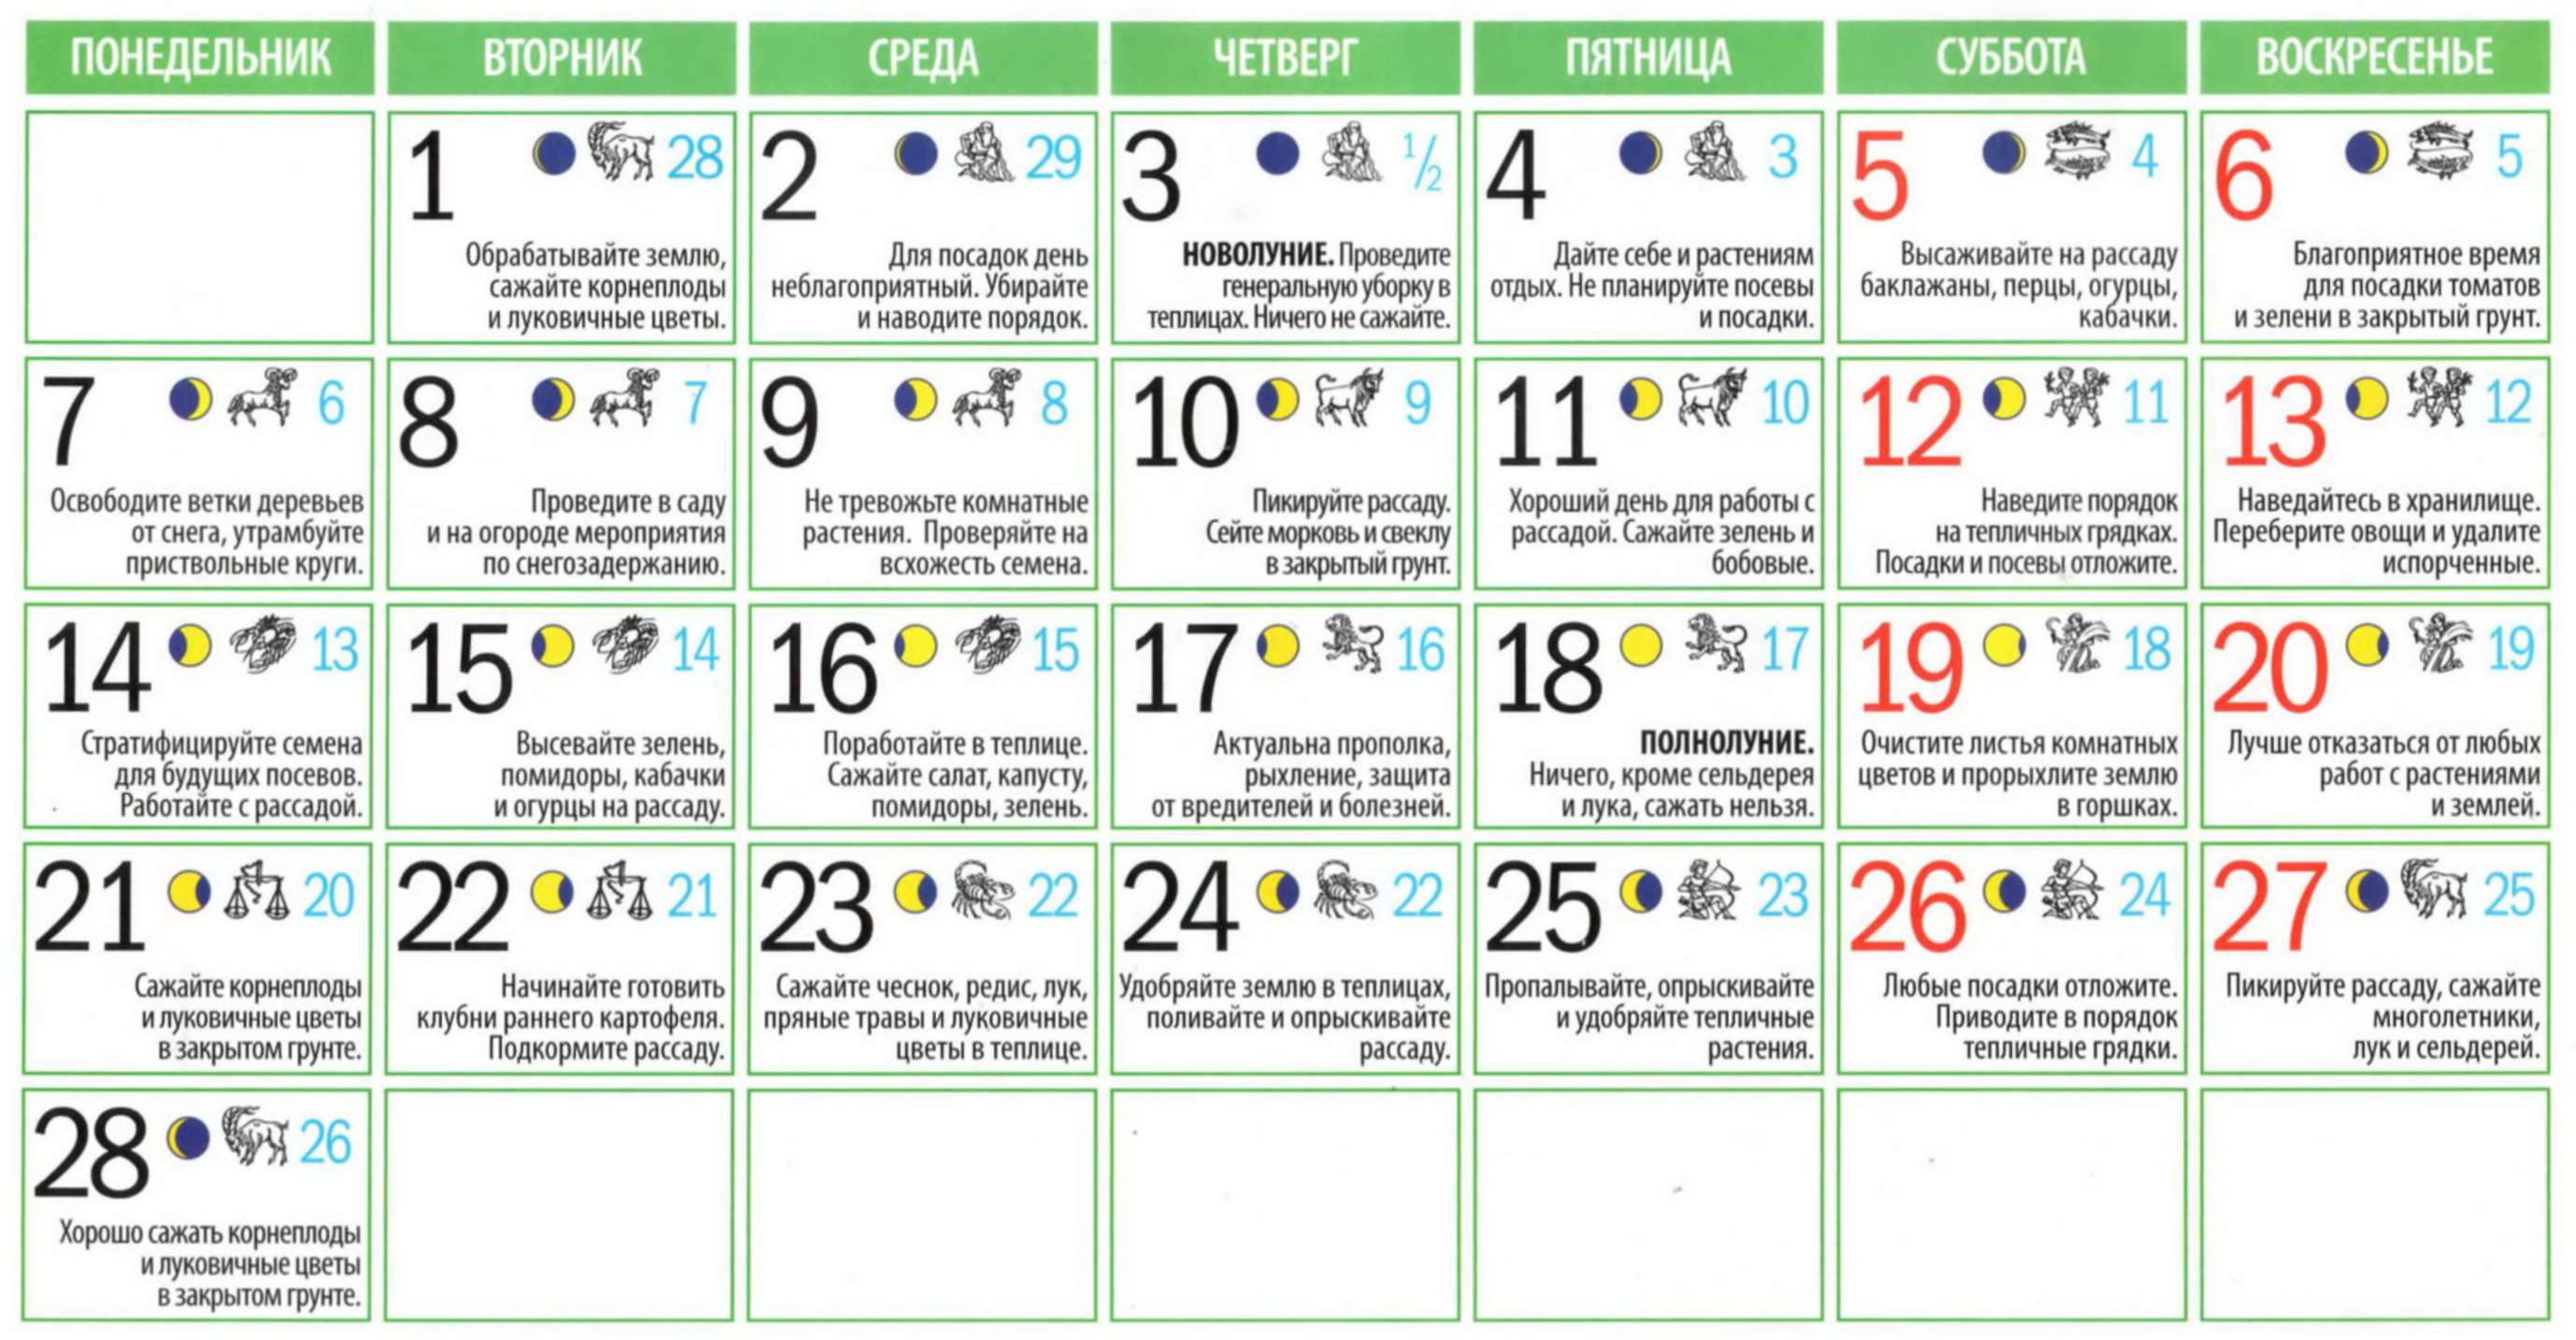 Календарь садовода на 2011 г - Лунный календарь садовода-огородника